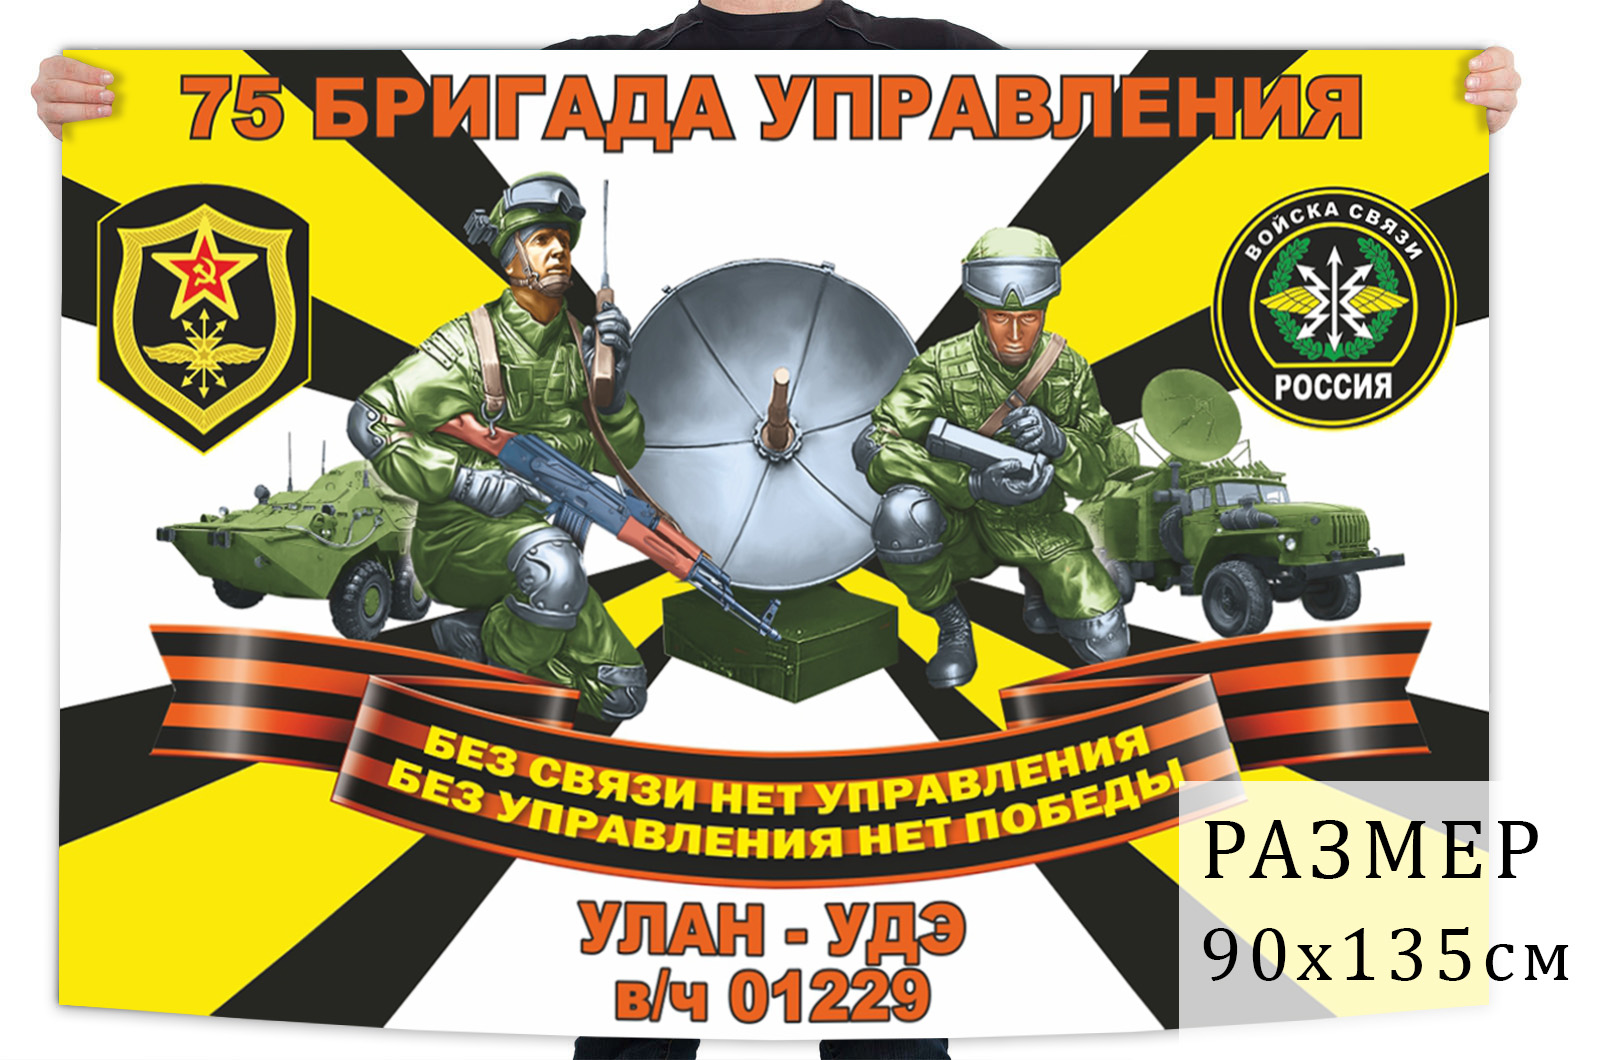 Флаг 75 бригады управления войск связи